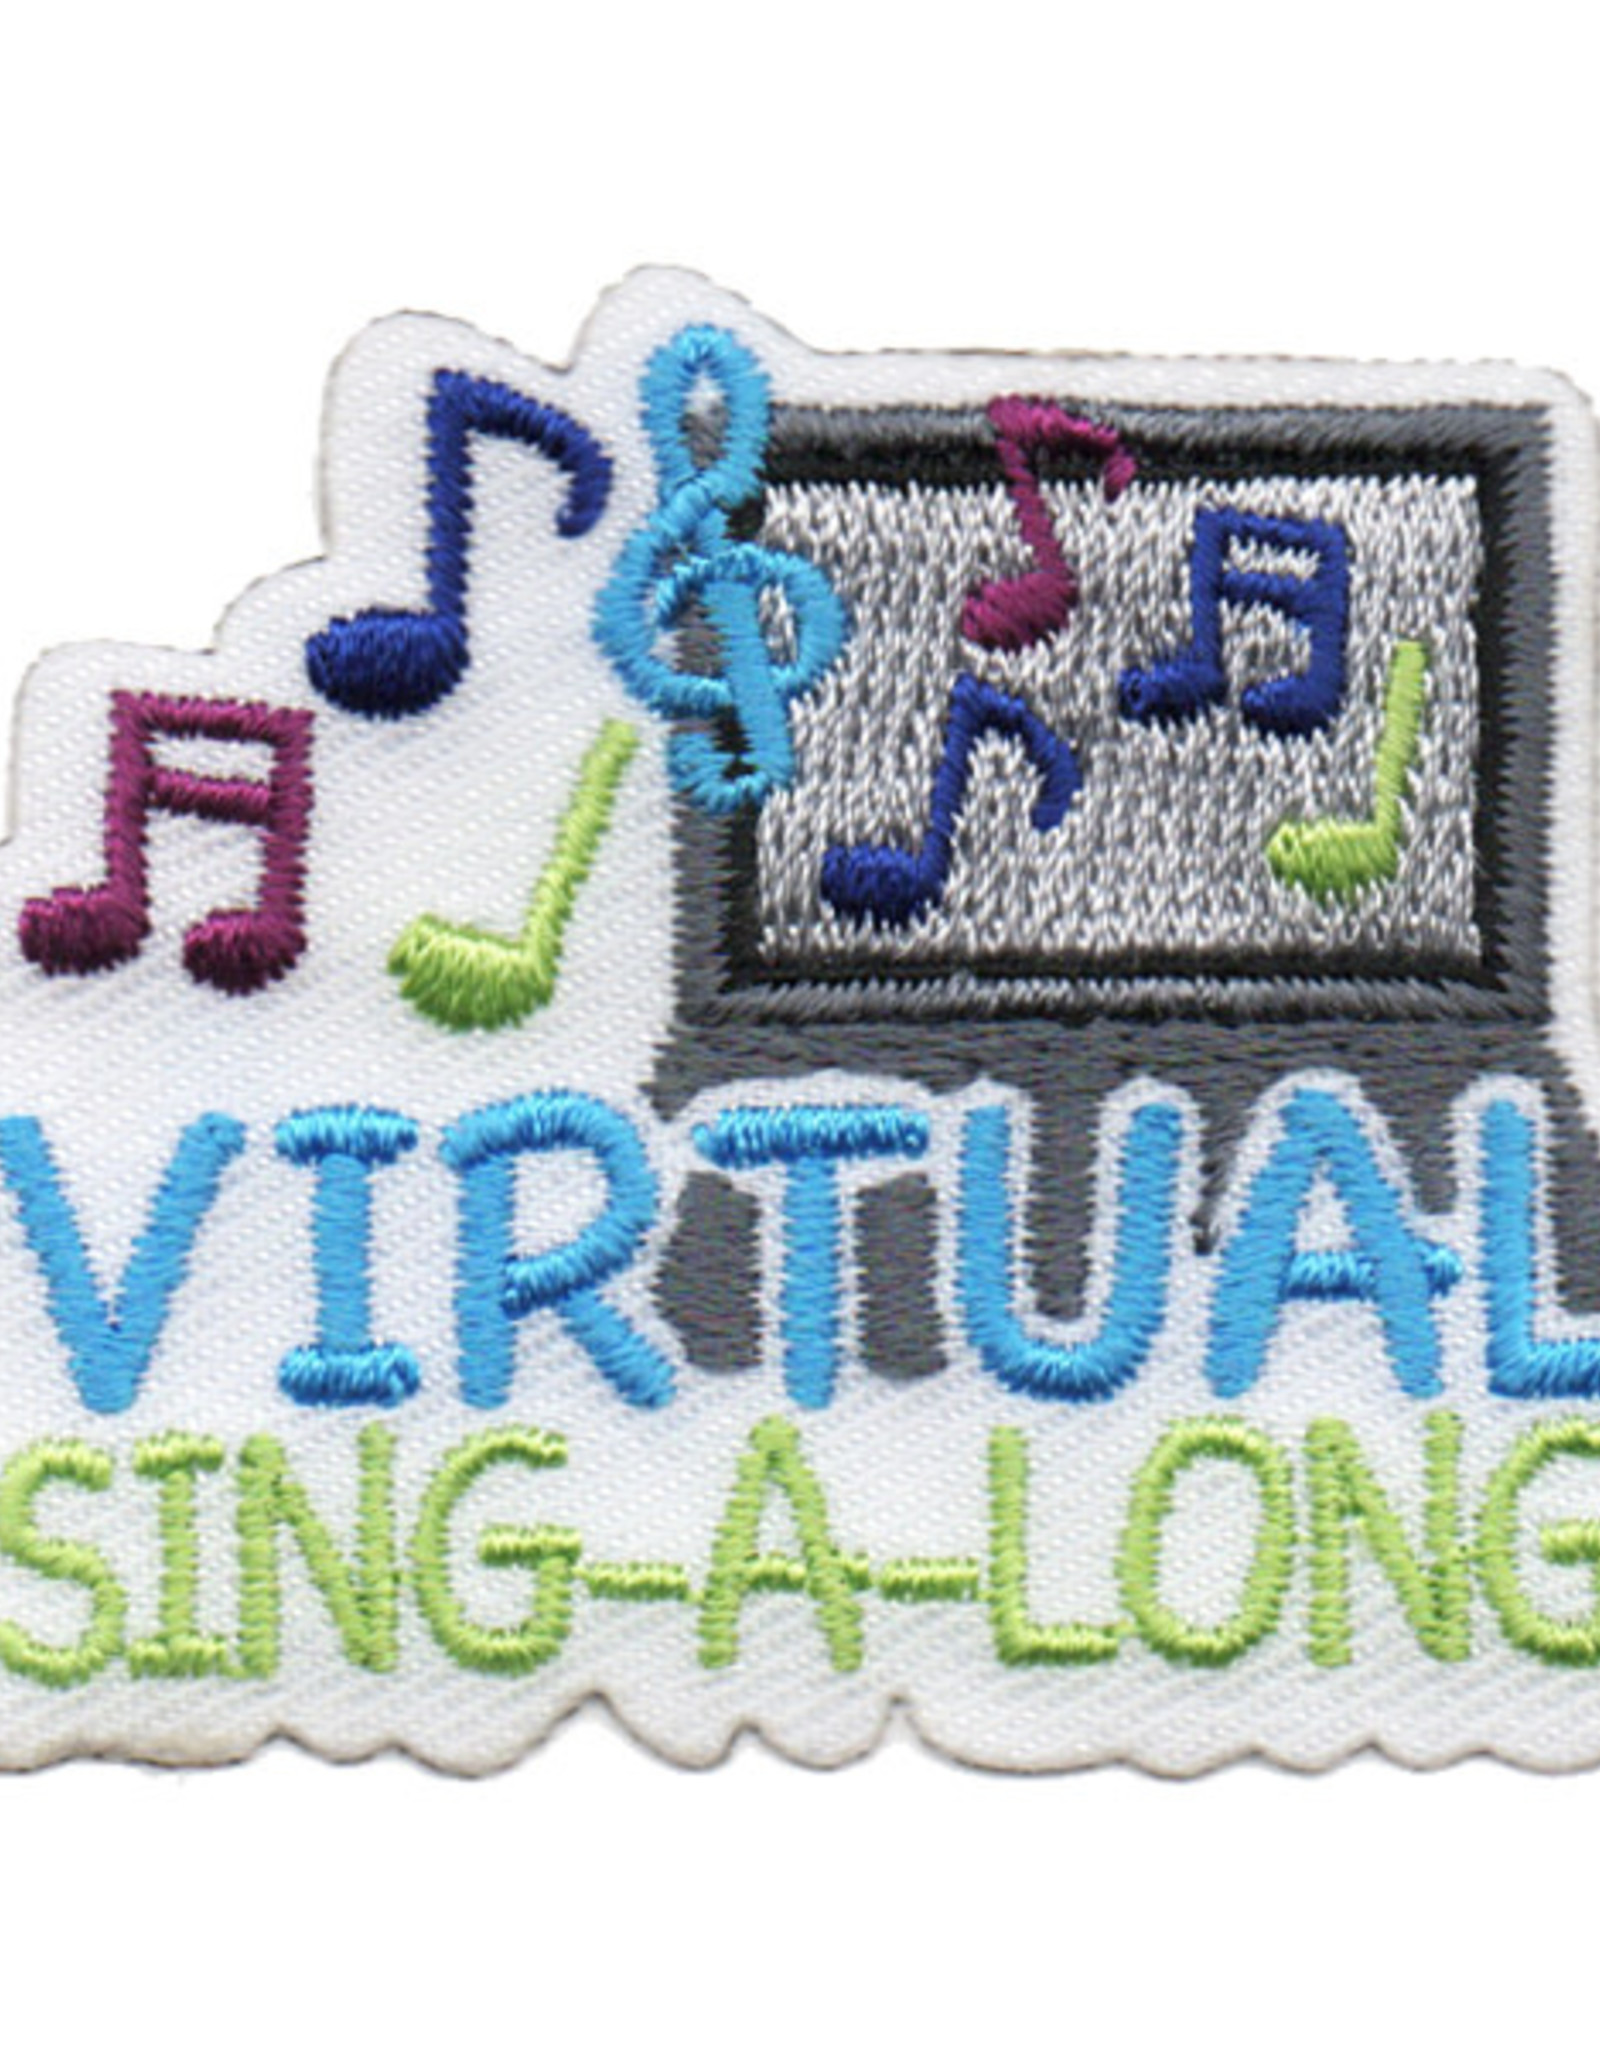 Advantage Emblem & Screen Prnt Virtual Sing-A-Long Fun Patch (5984)